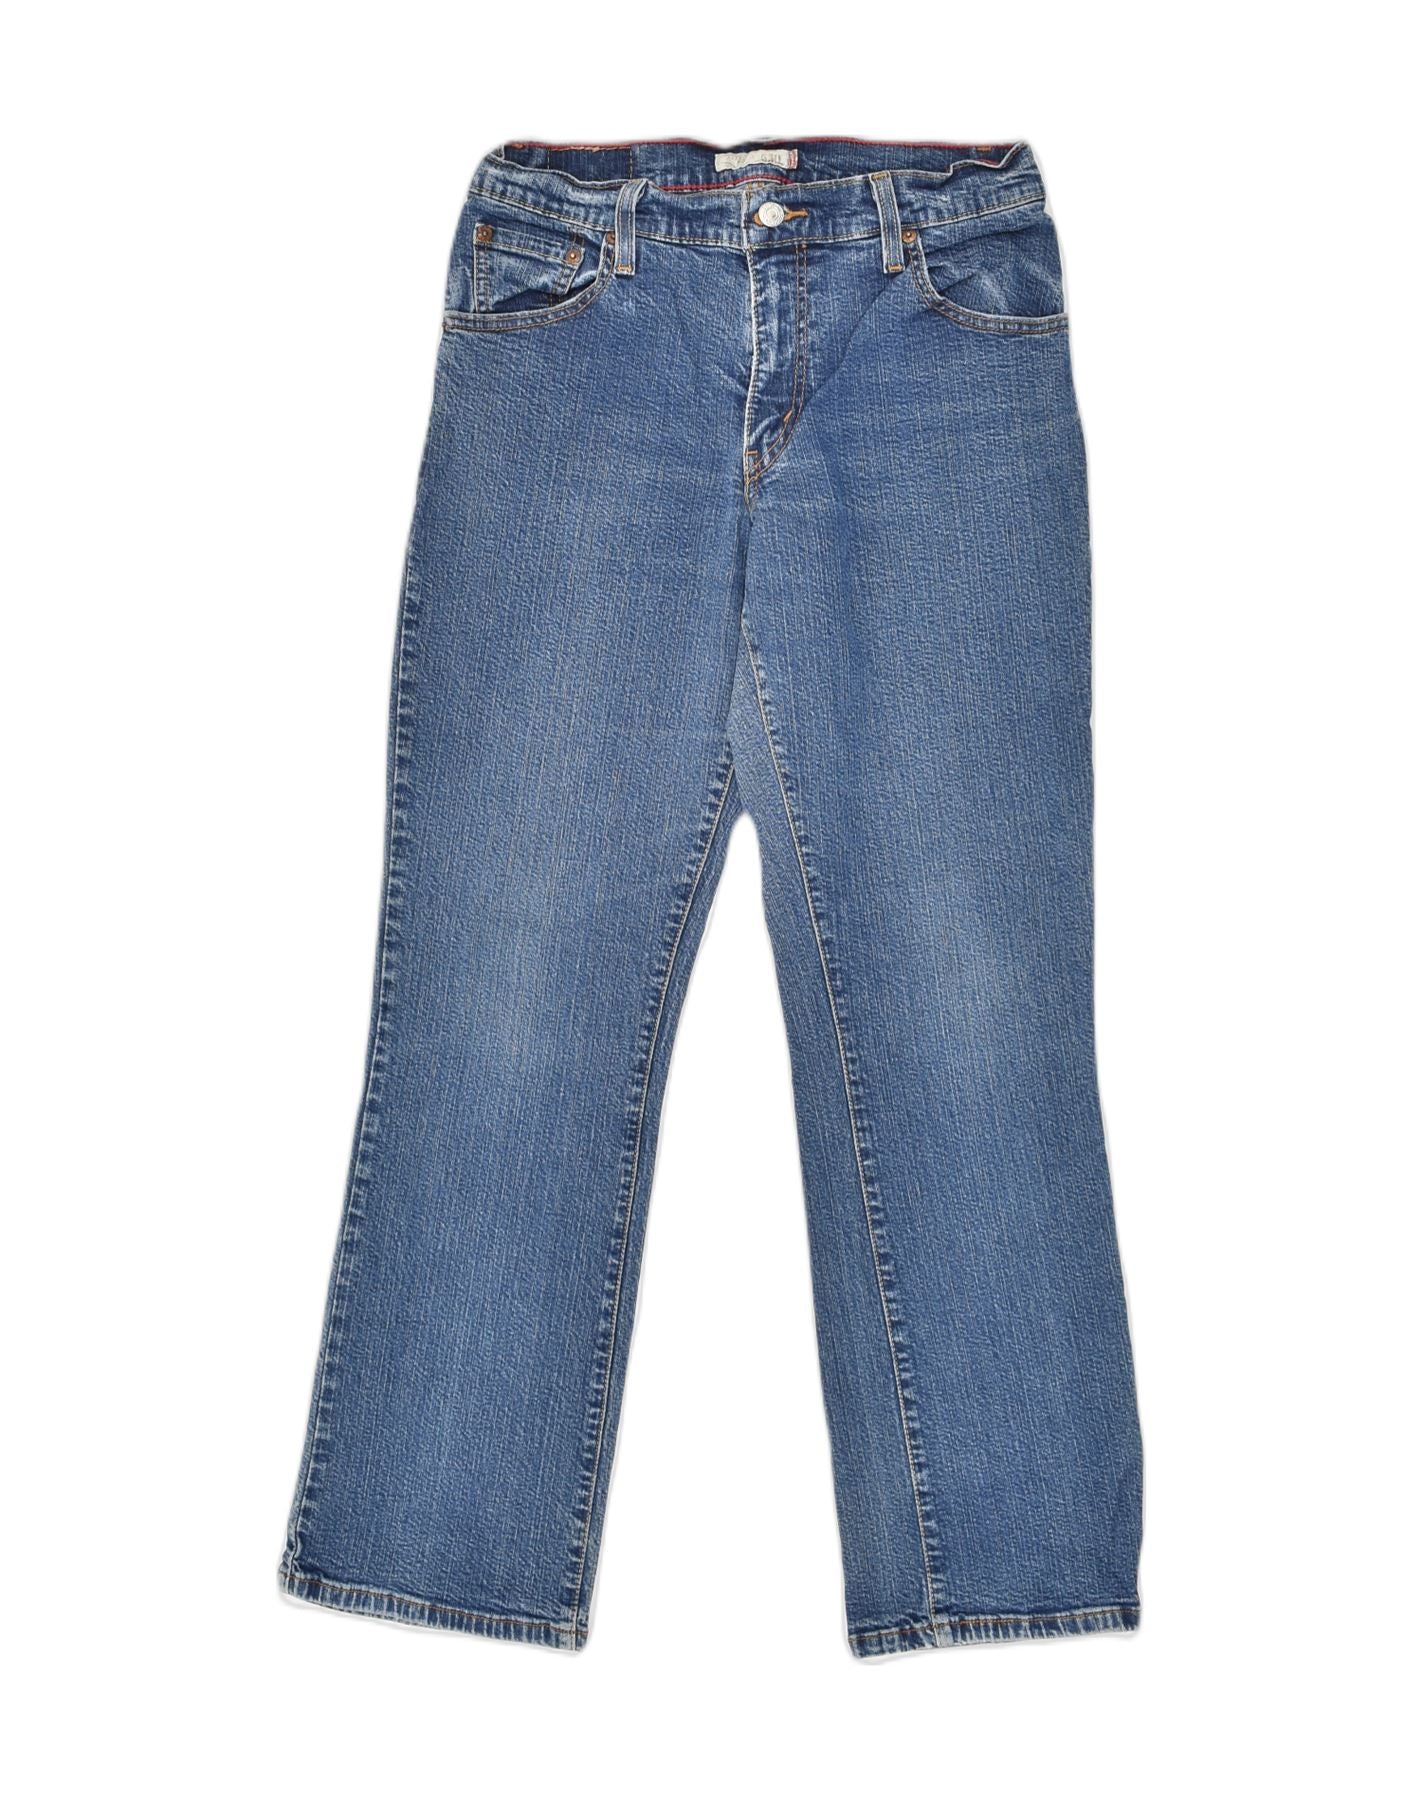 Vintage Levi's 550 Straight Jean